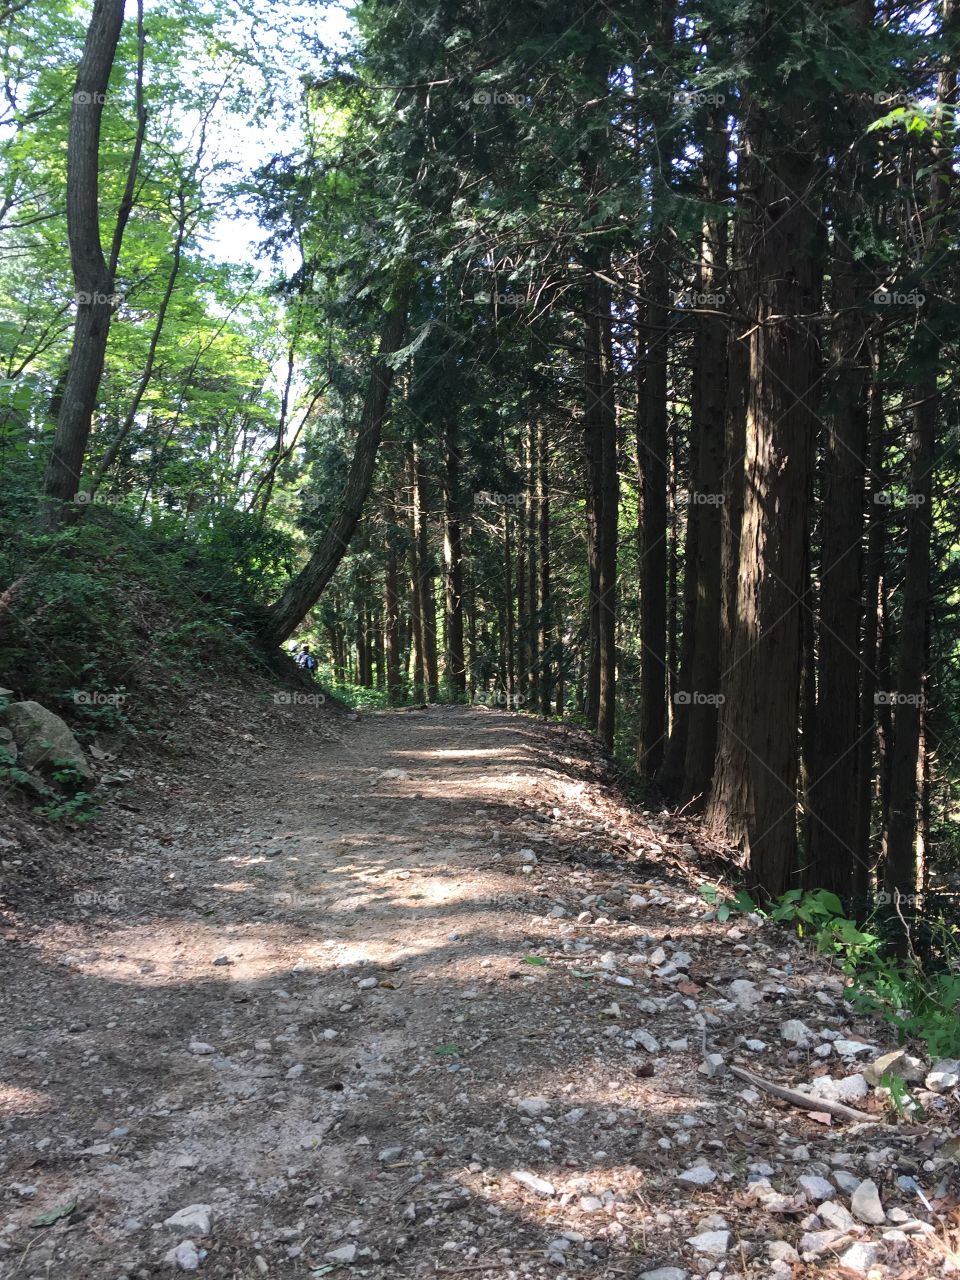 Hiking through the mountains in Kobe, Japan